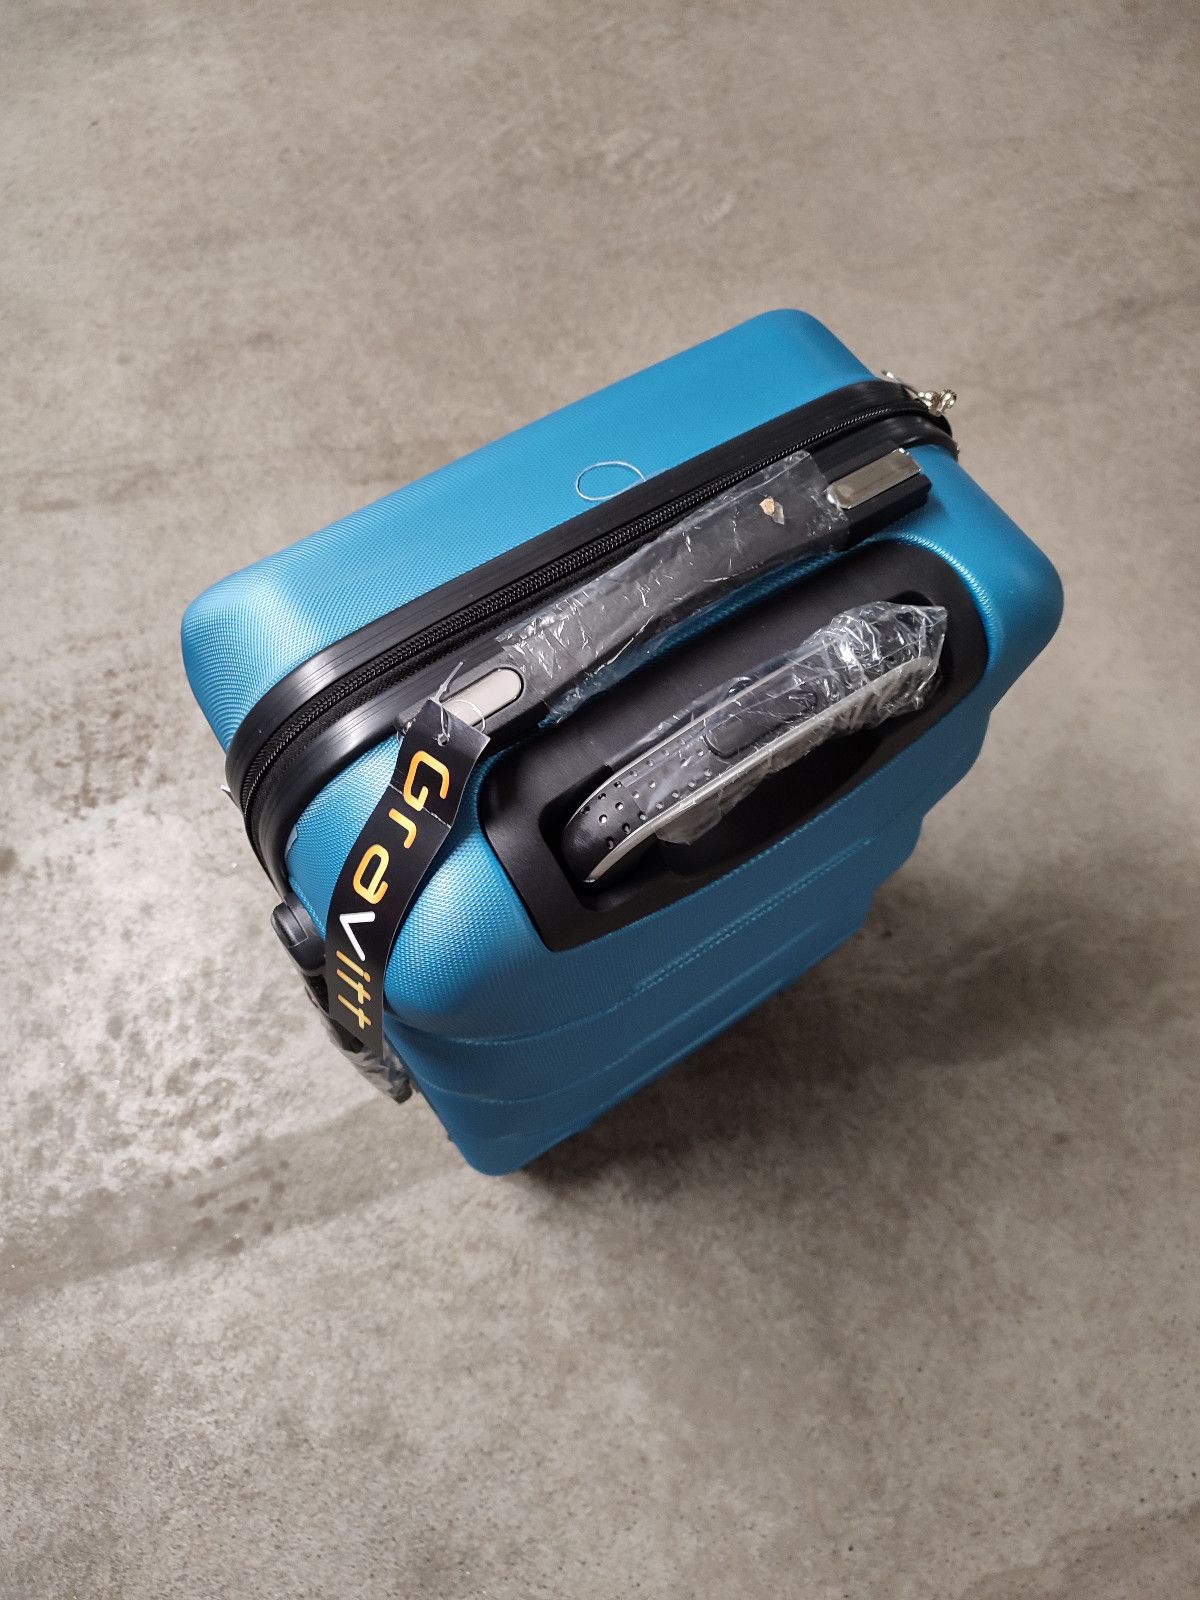 Nowa błękitna walizka podróżna